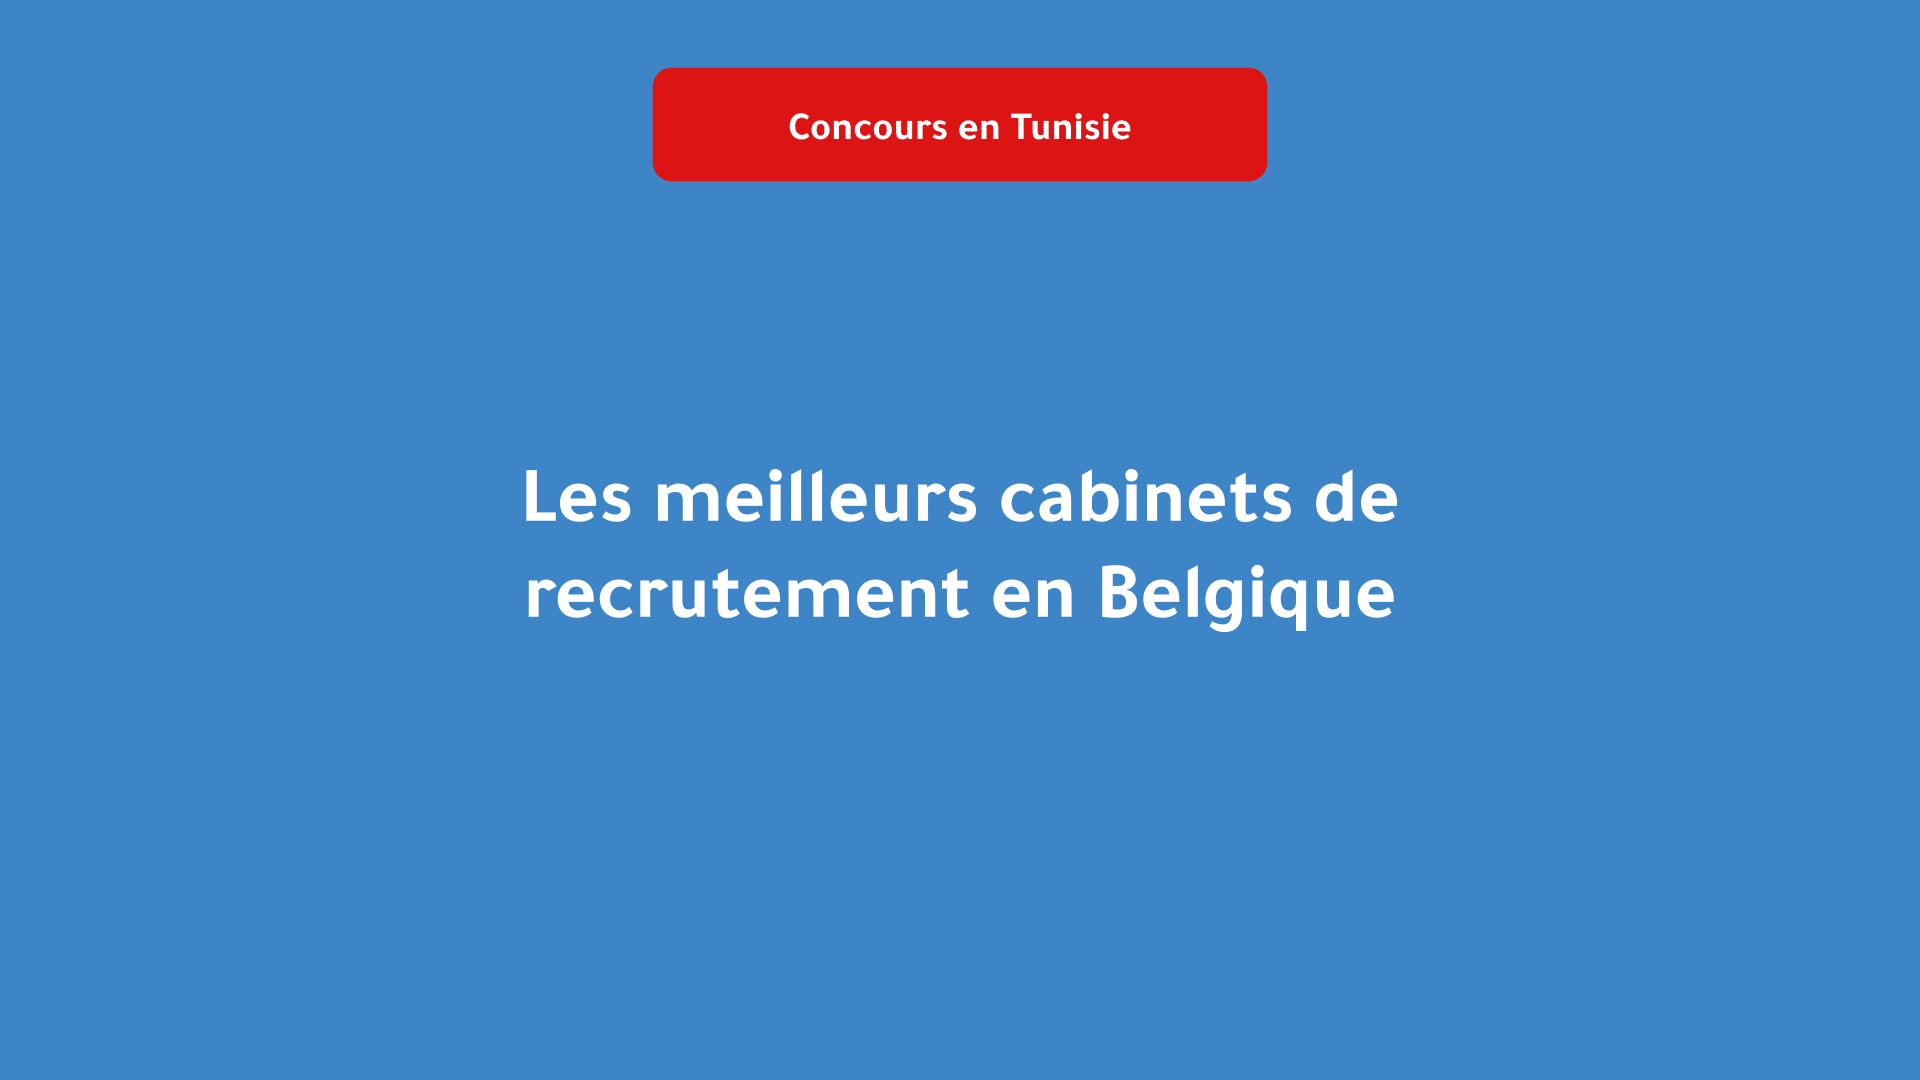 Les meilleurs cabinets de recrutement en Belgique